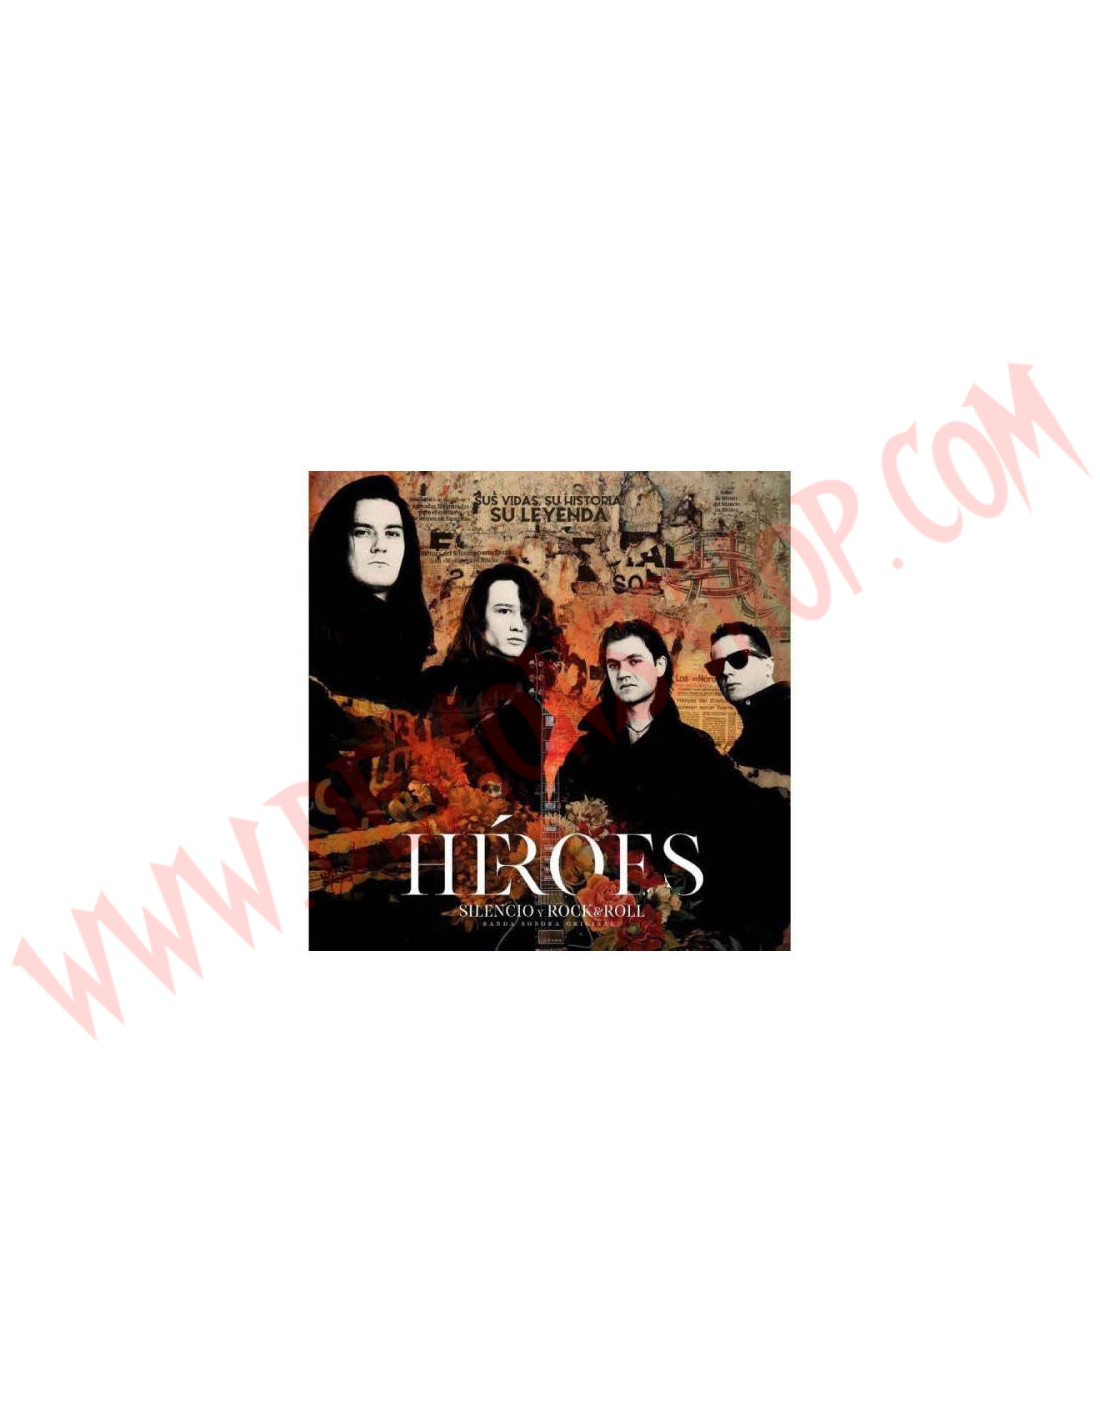 mínimo Cercanamente comentarista Vinilo LP Heroes del Silencio - Héroes: Silencio Y Rock & Roll - DEMONS SHOP